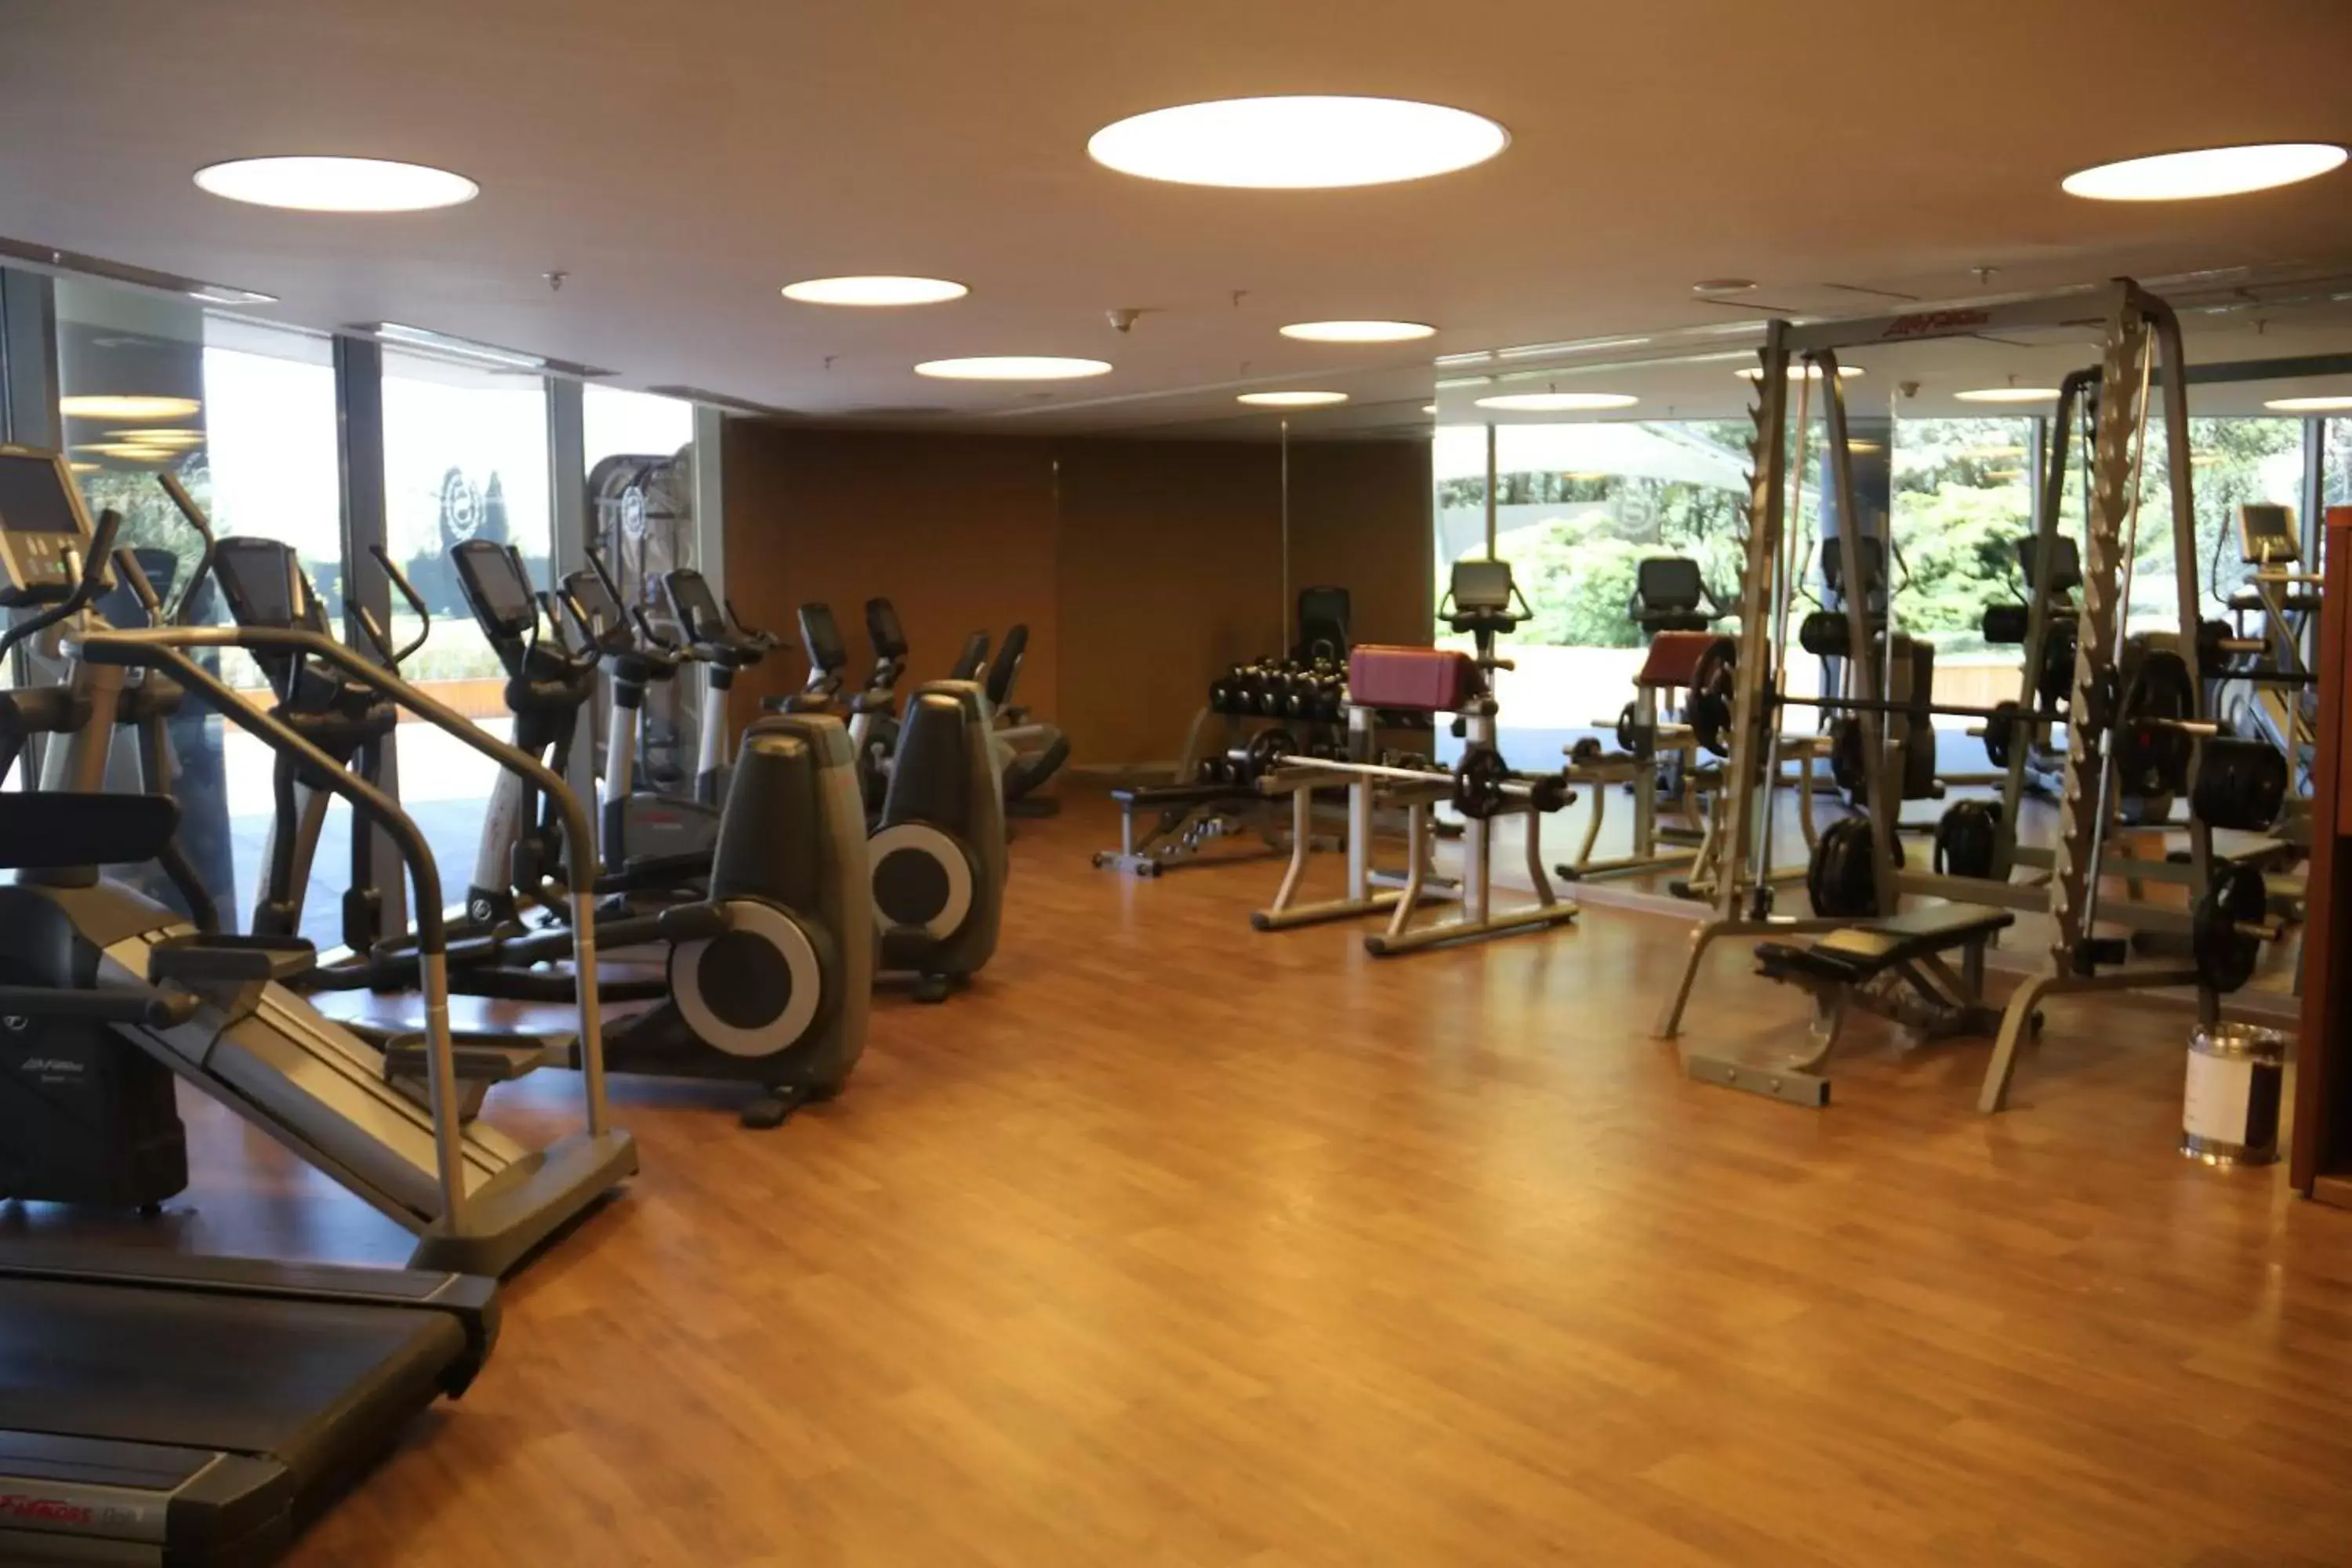 Fitness centre/facilities, Fitness Center/Facilities in Sheraton Istanbul Atakoy Hotel